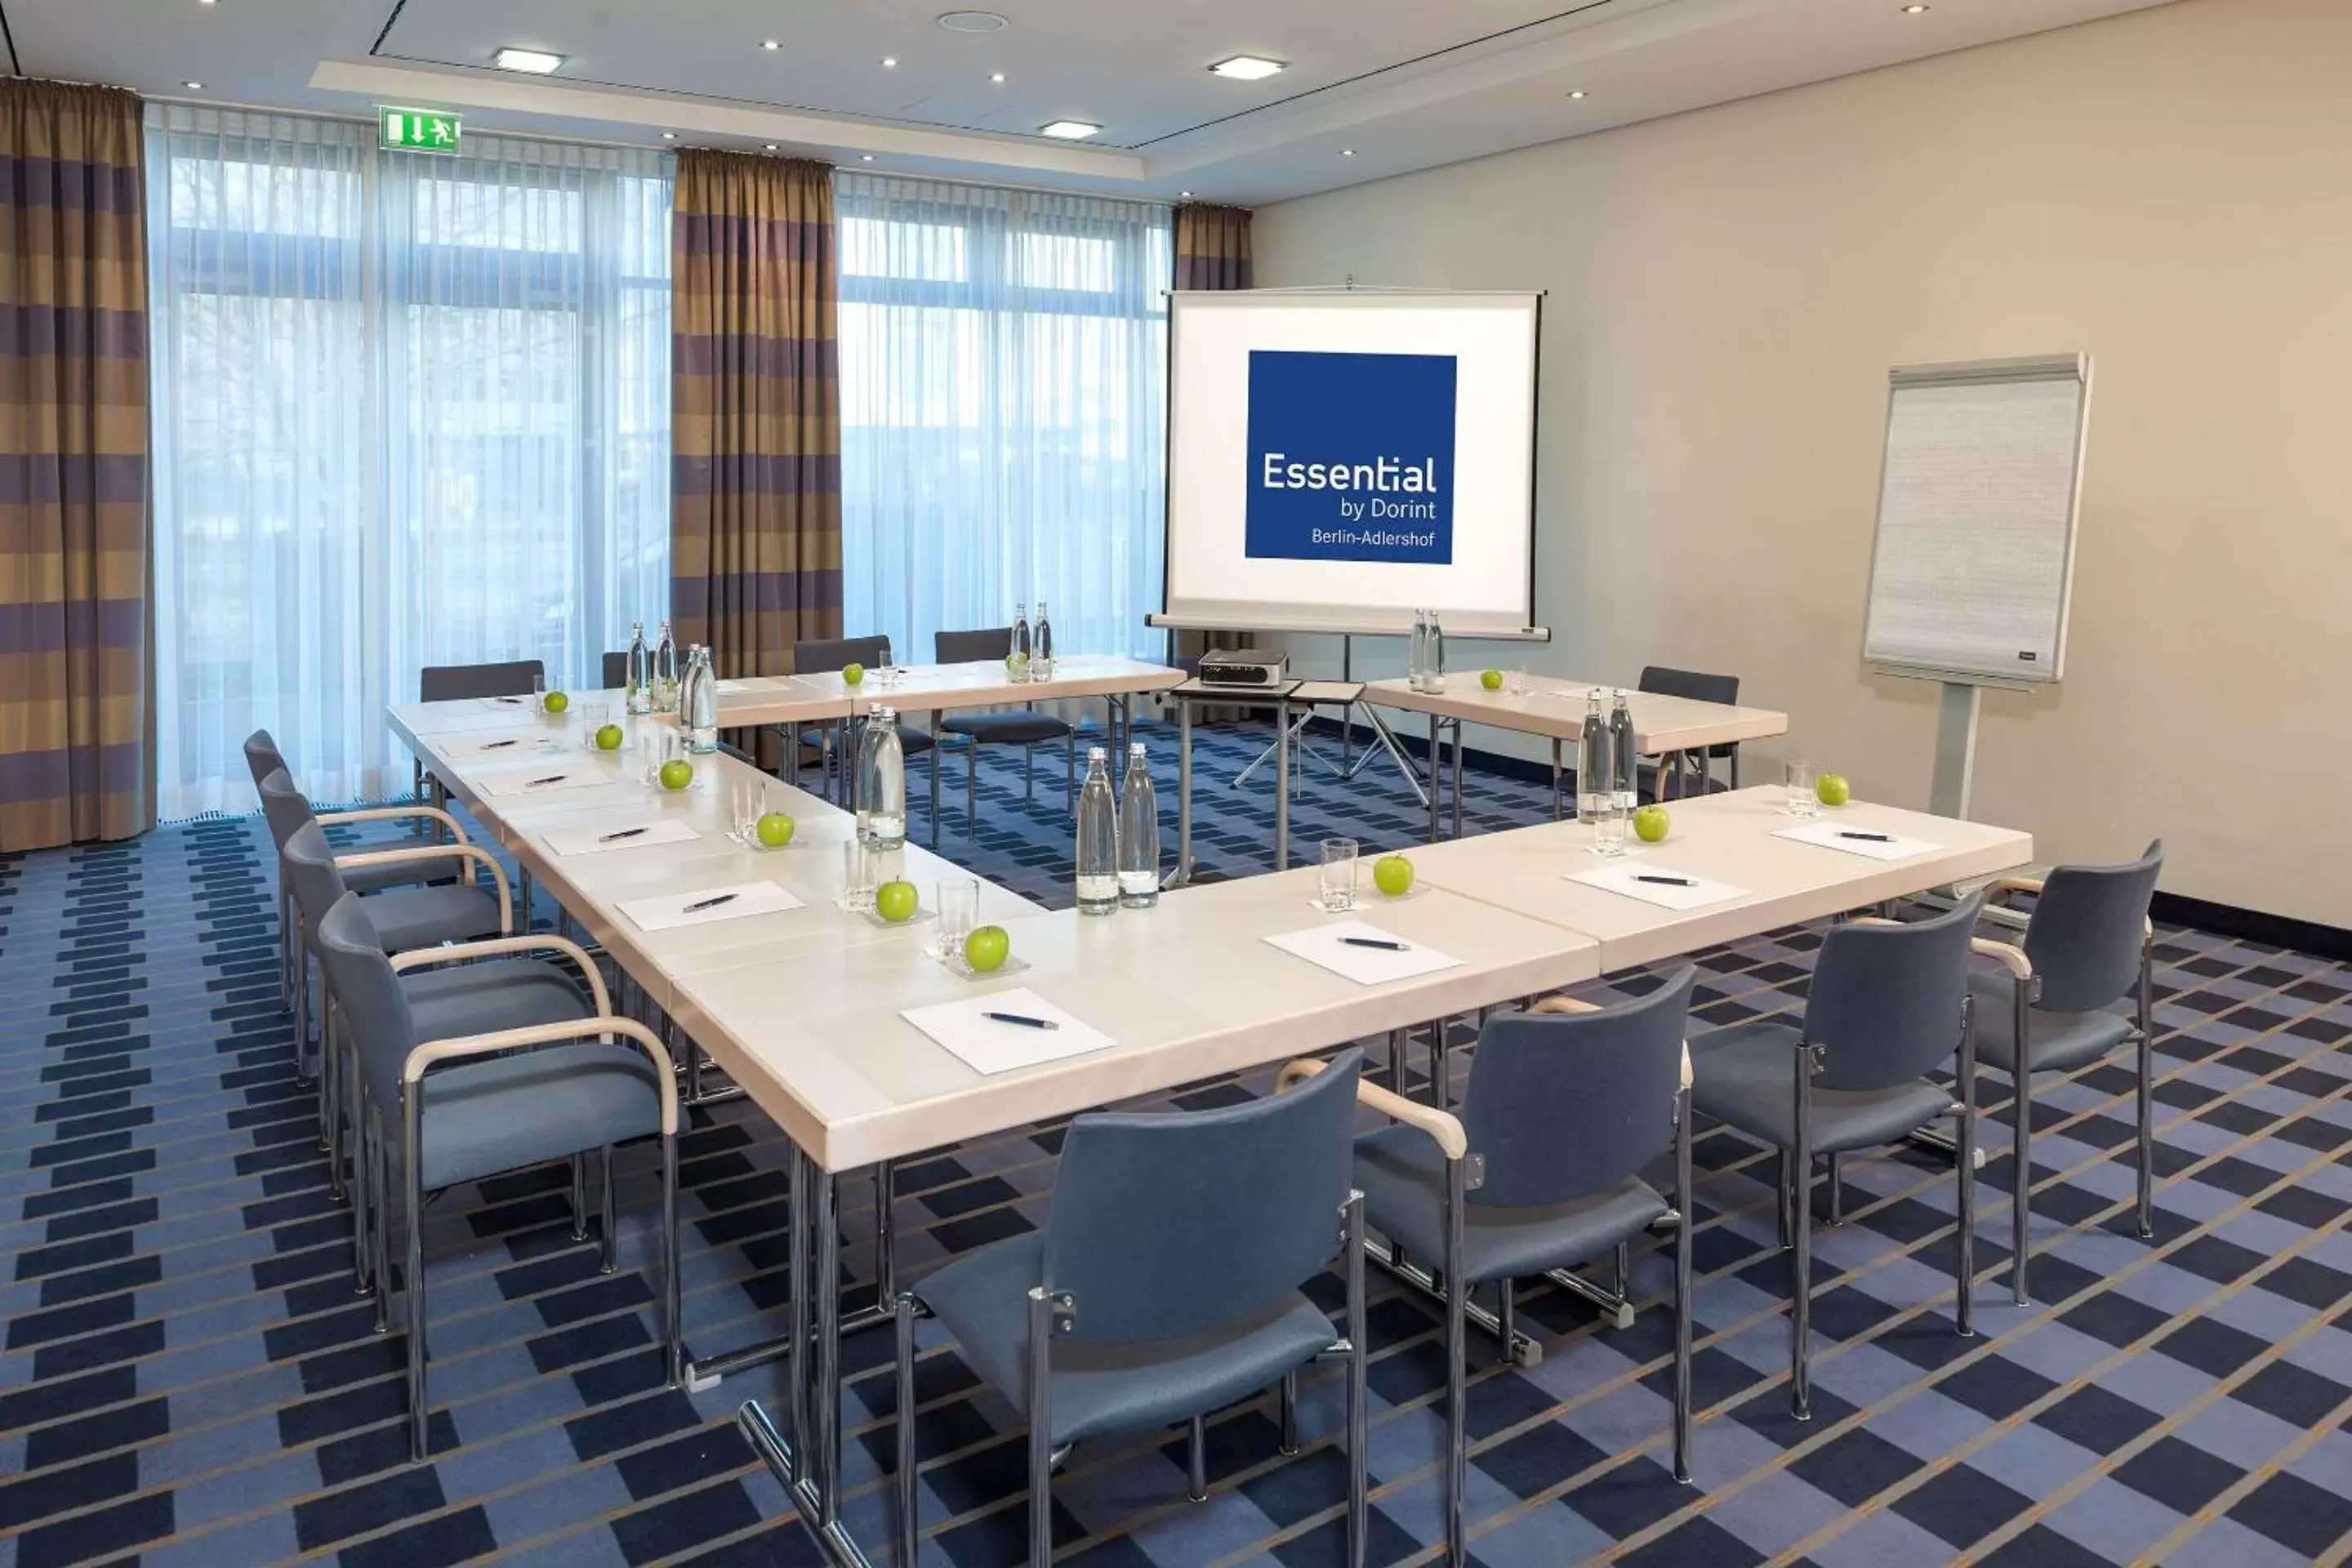 Meeting/conference room in Essential by Dorint Berlin-Adlershof